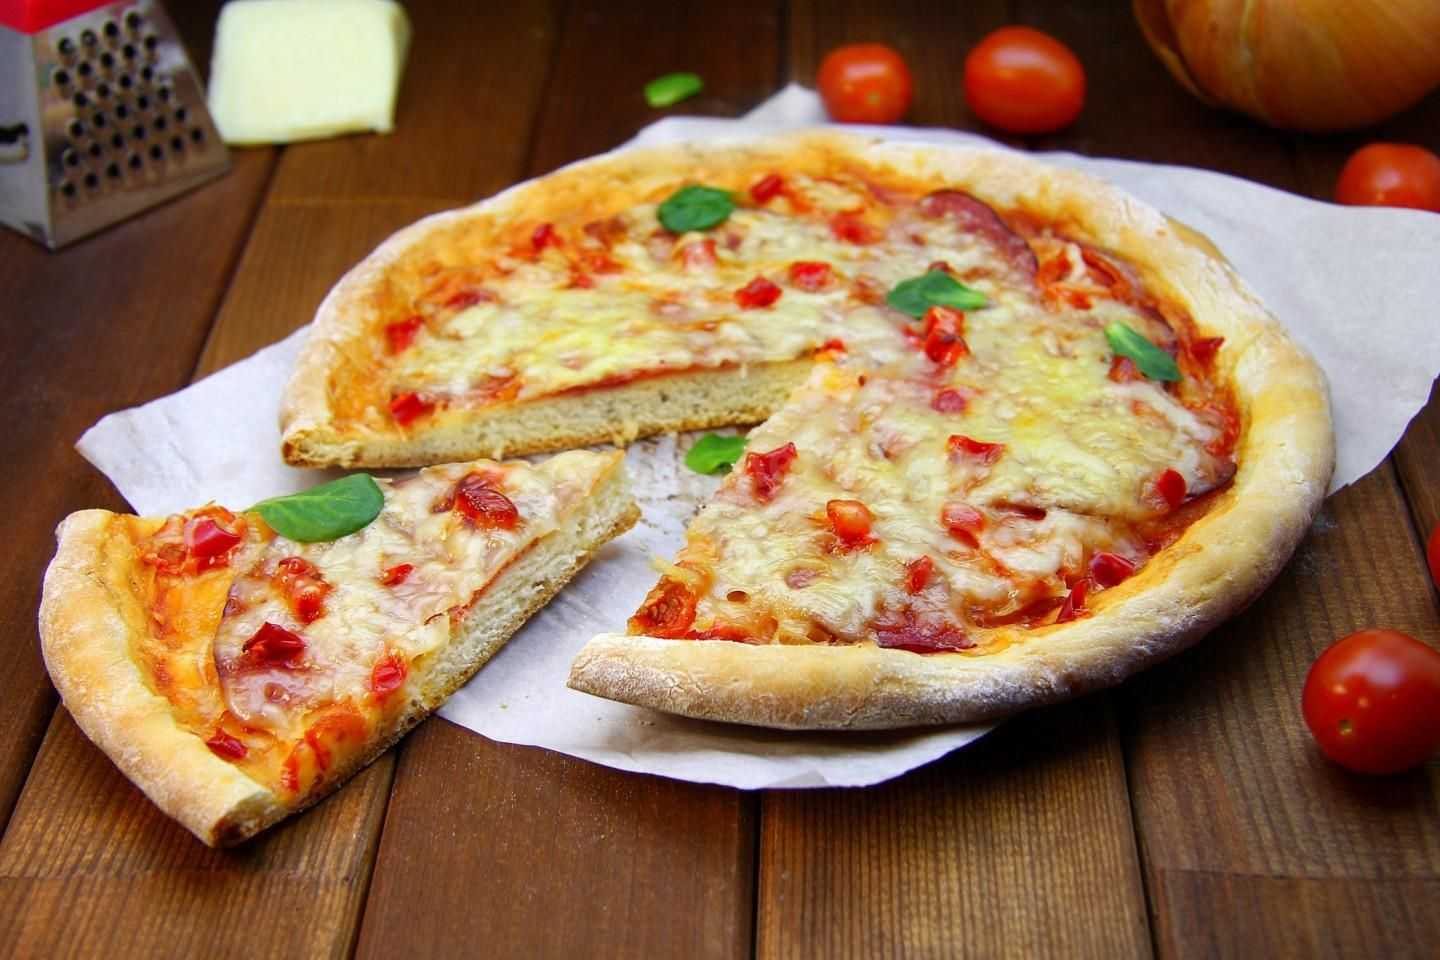 Вкусное тесто для пиццы-дрожжевое и без дрожжей + рецепт быстрой пиццы как в пиццерии